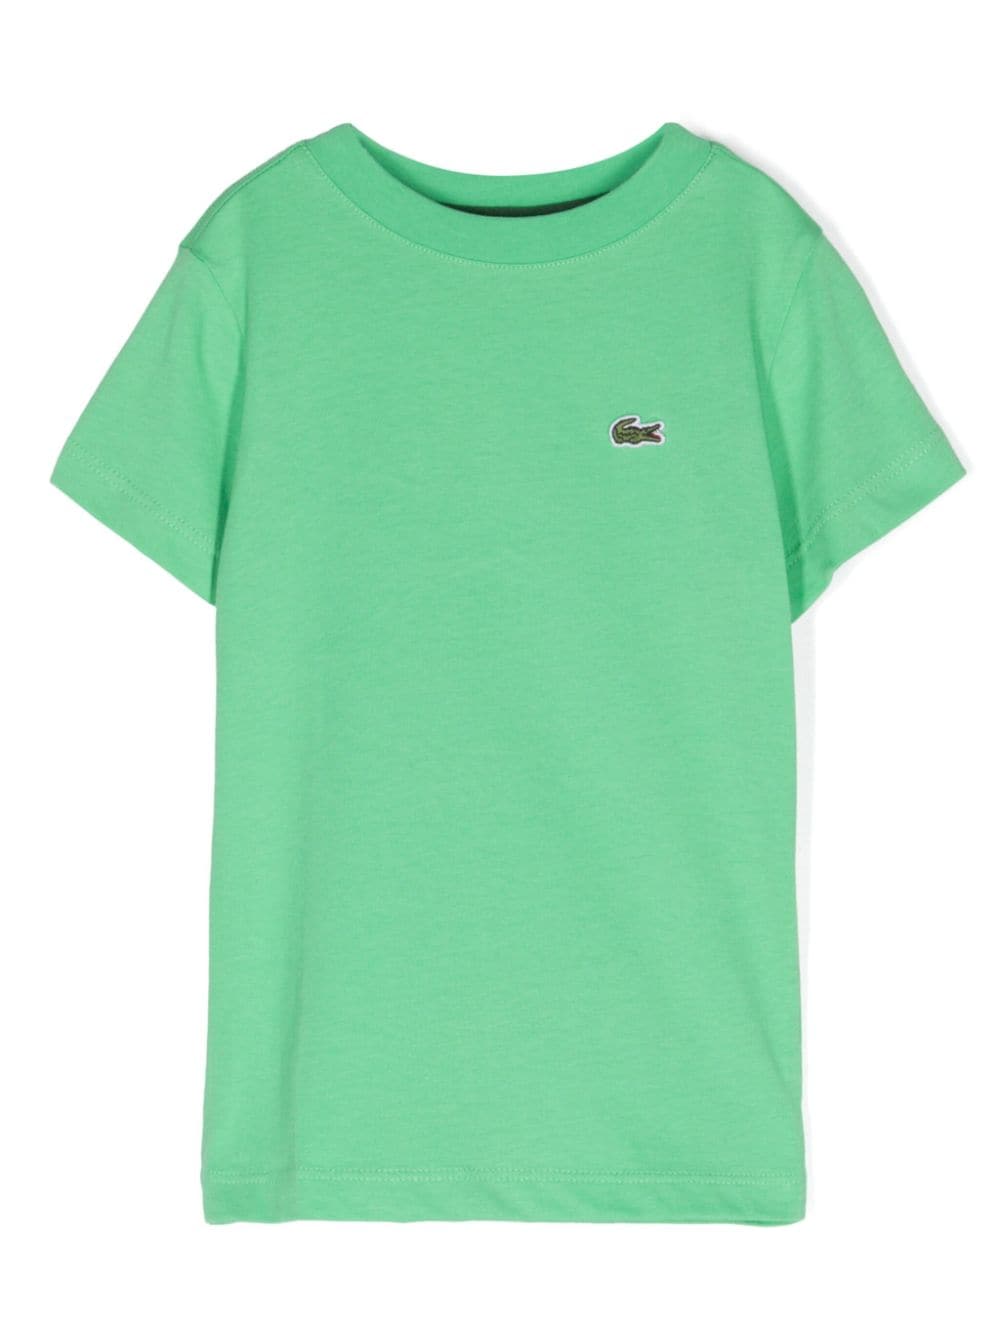 Lacoste Kids T-shirt con ricamo - Verde